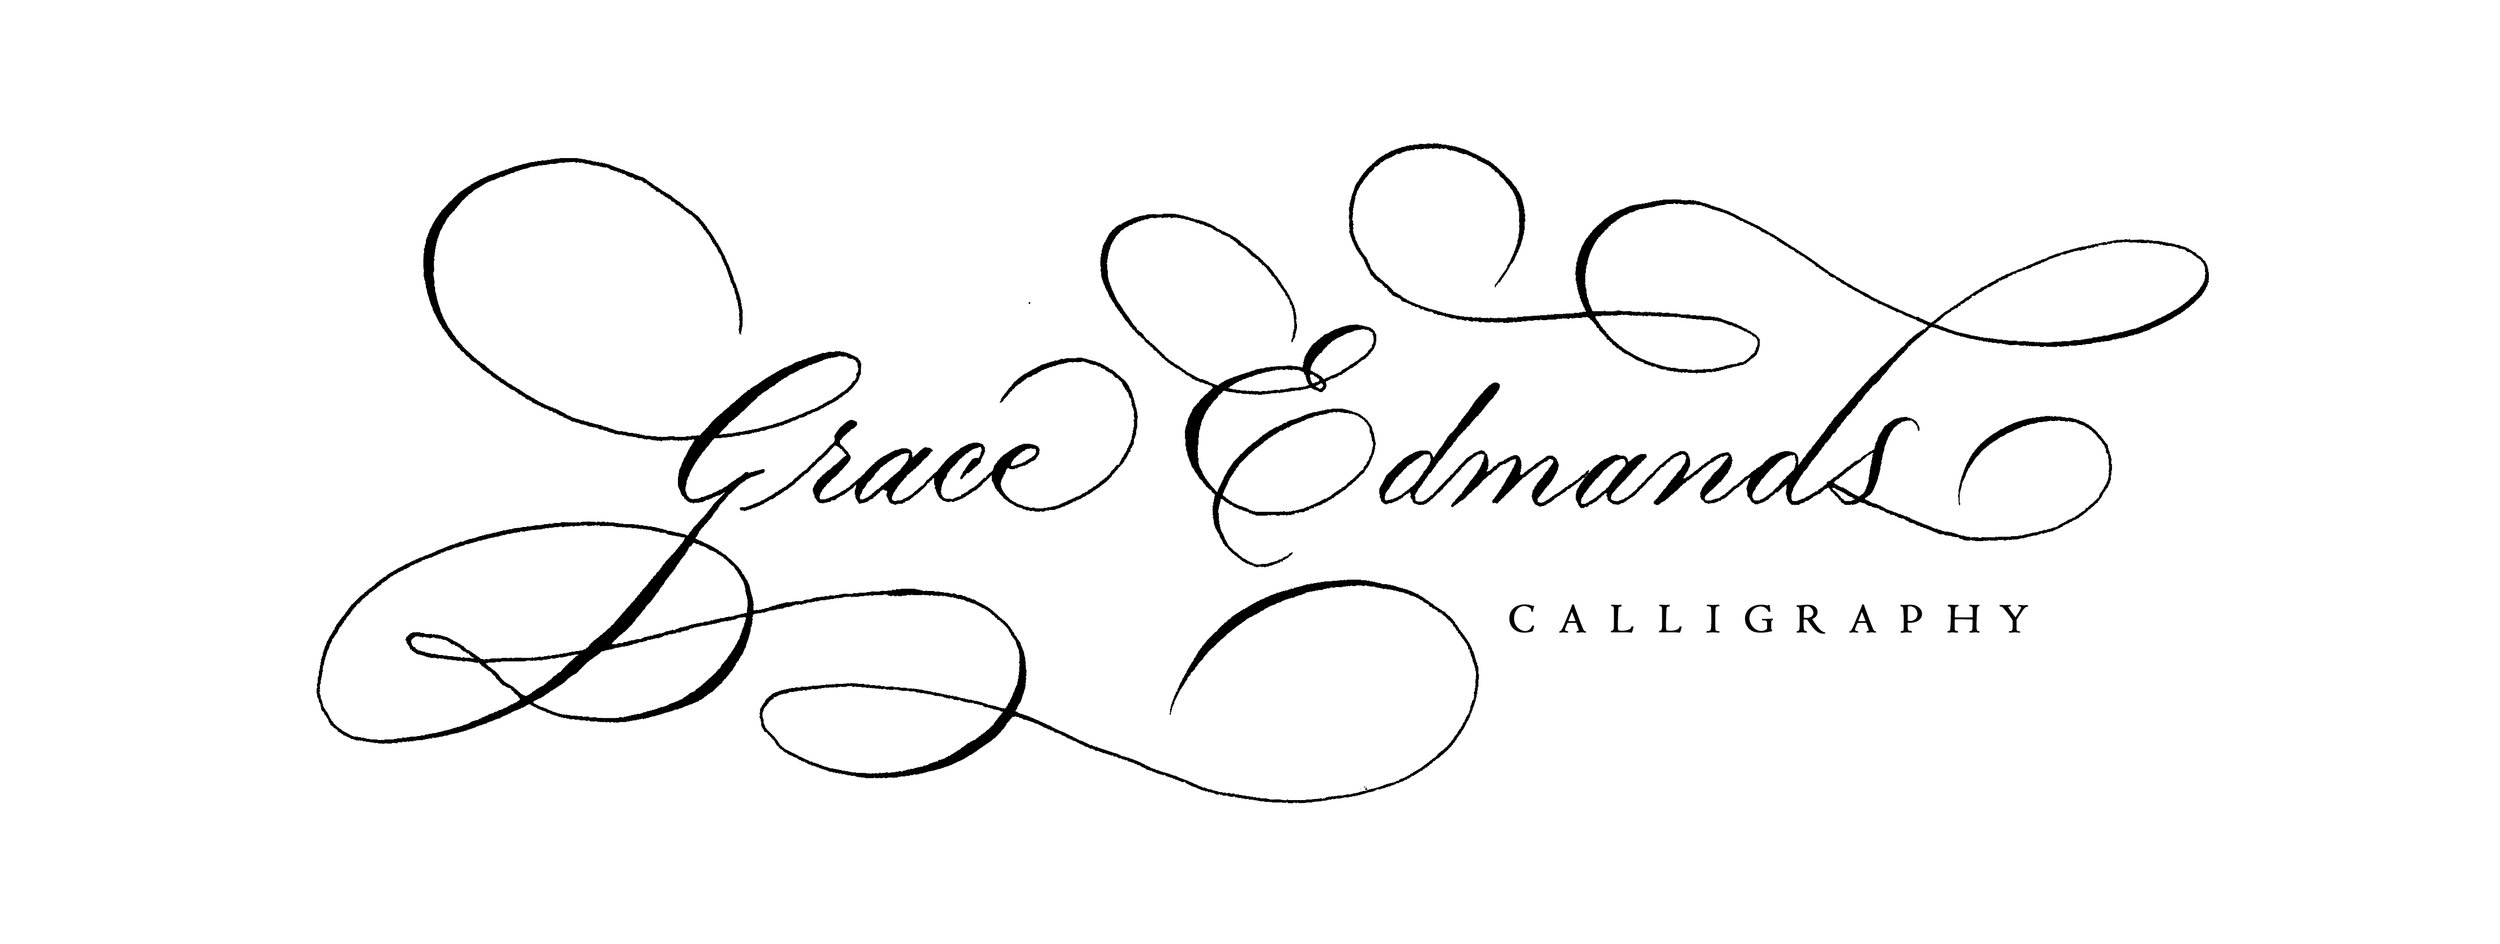 Grace Edmands Logo #1.jpg